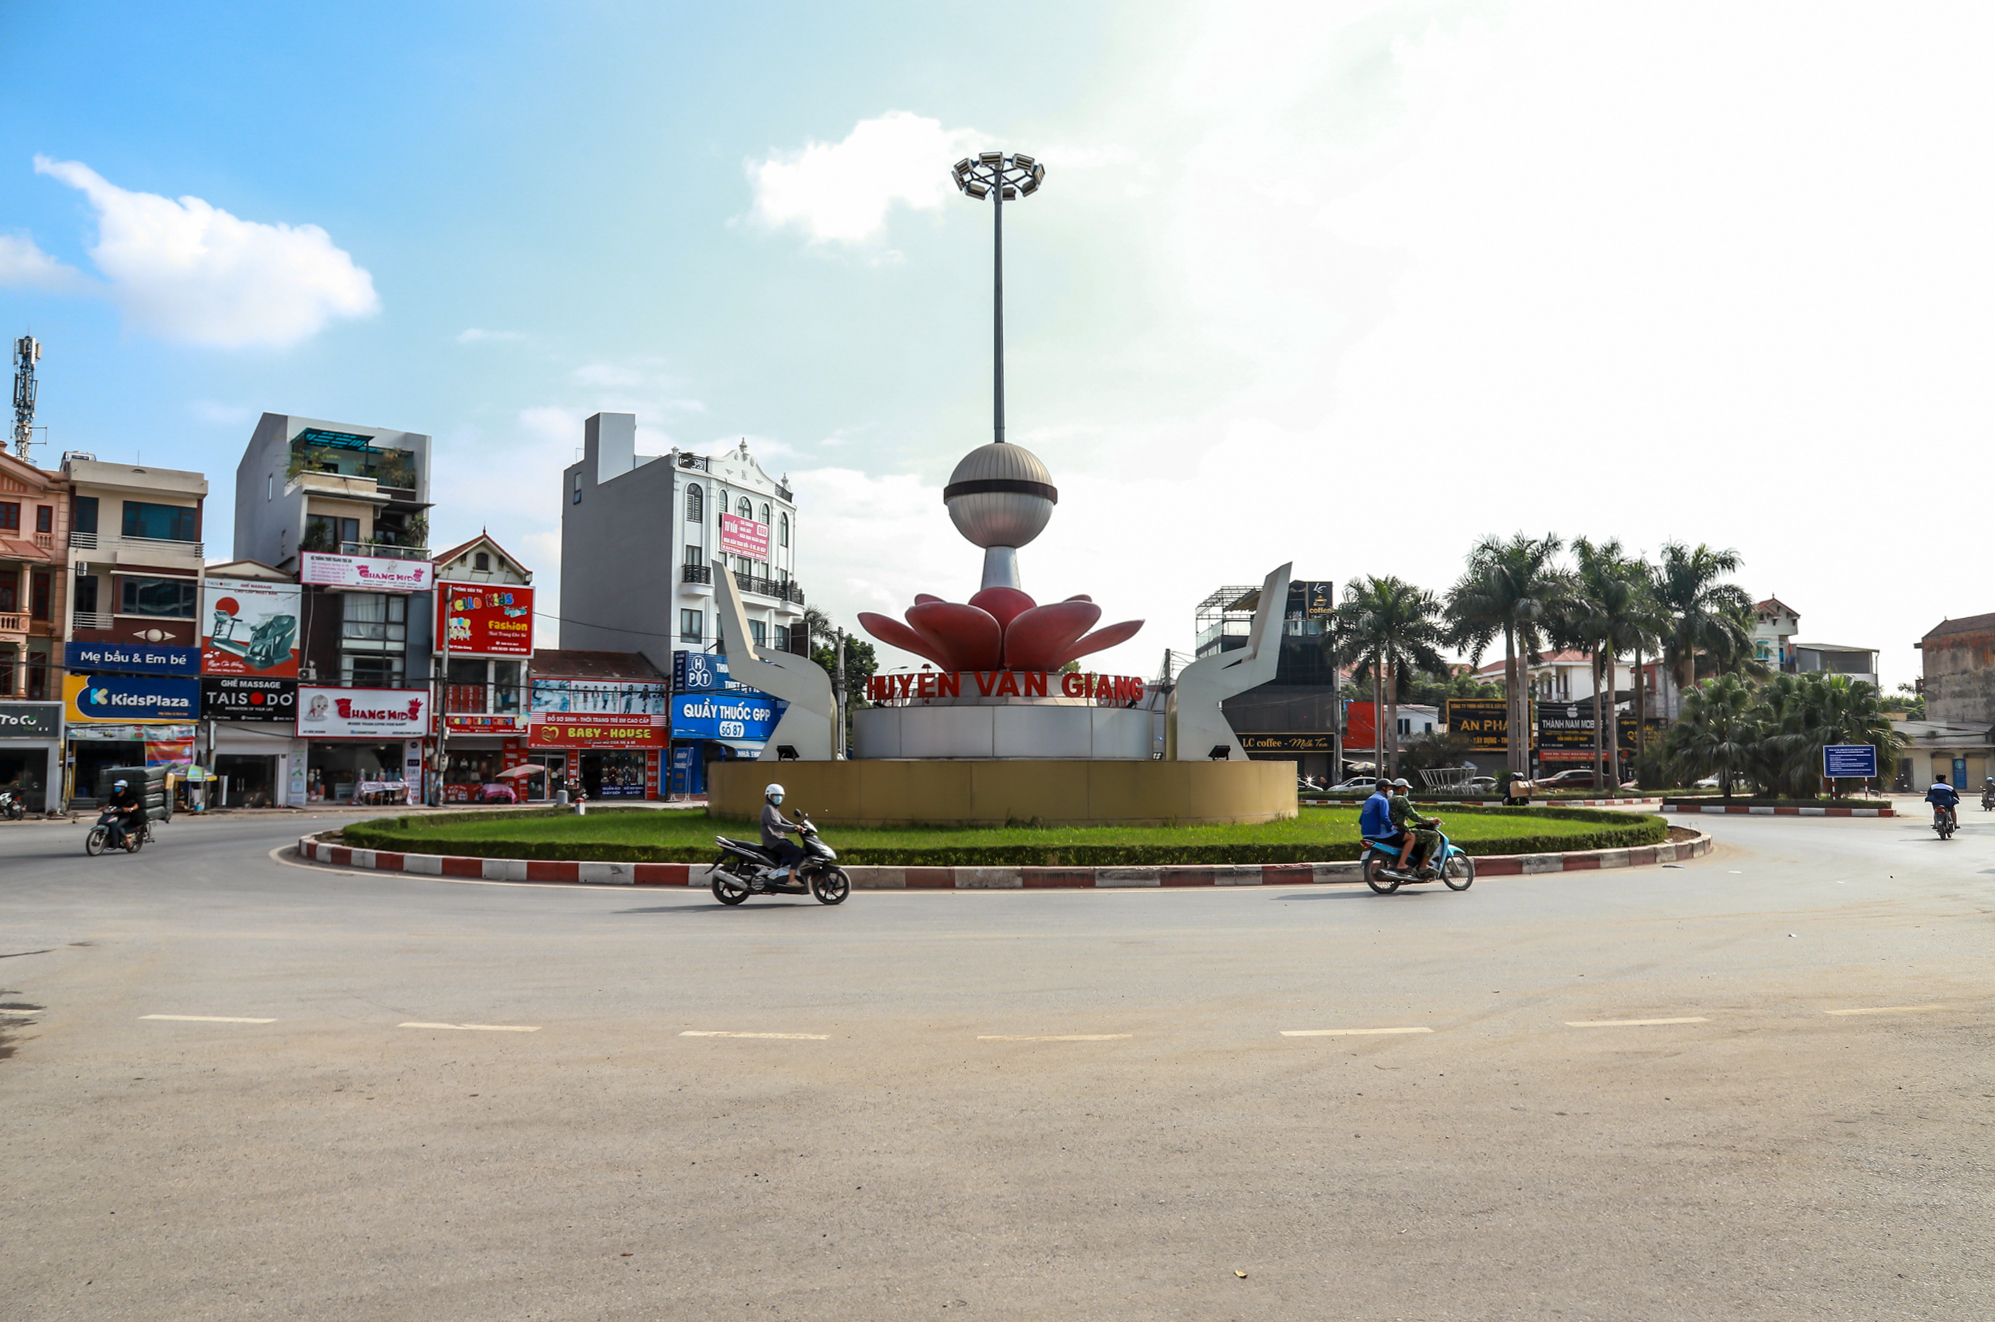 Huyện sát vách Hà Nội, thu ngân sách gấp đôi quận Hoàn Kiếm - Ảnh 1.